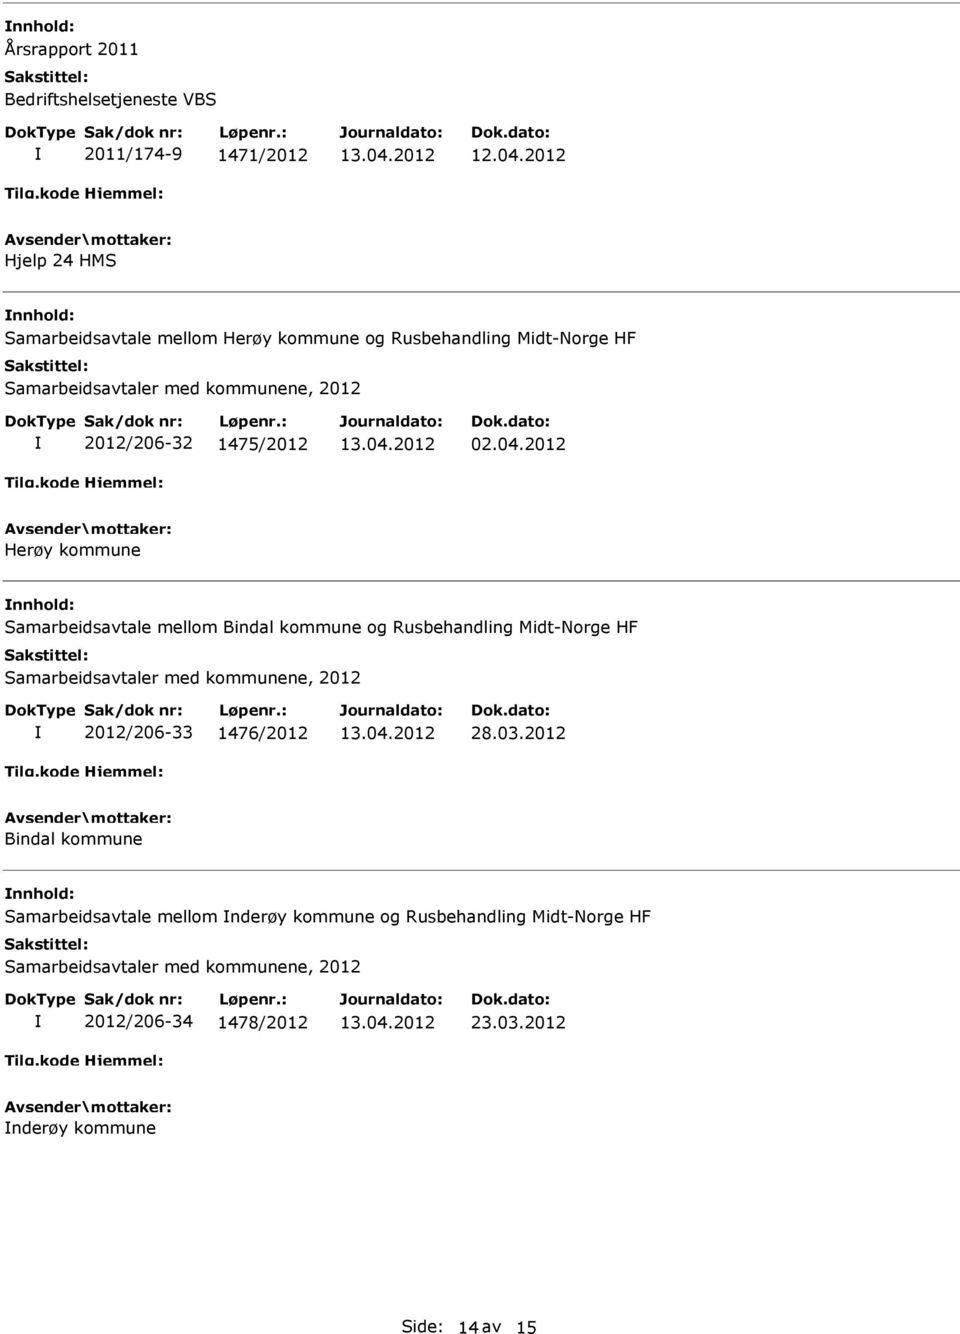 2012 Herøy kommune Samarbeidsavtale mellom Bindal kommune og Rusbehandling Midt-Norge HF Samarbeidsavtaler med kommunene, 2012 2012/206-33